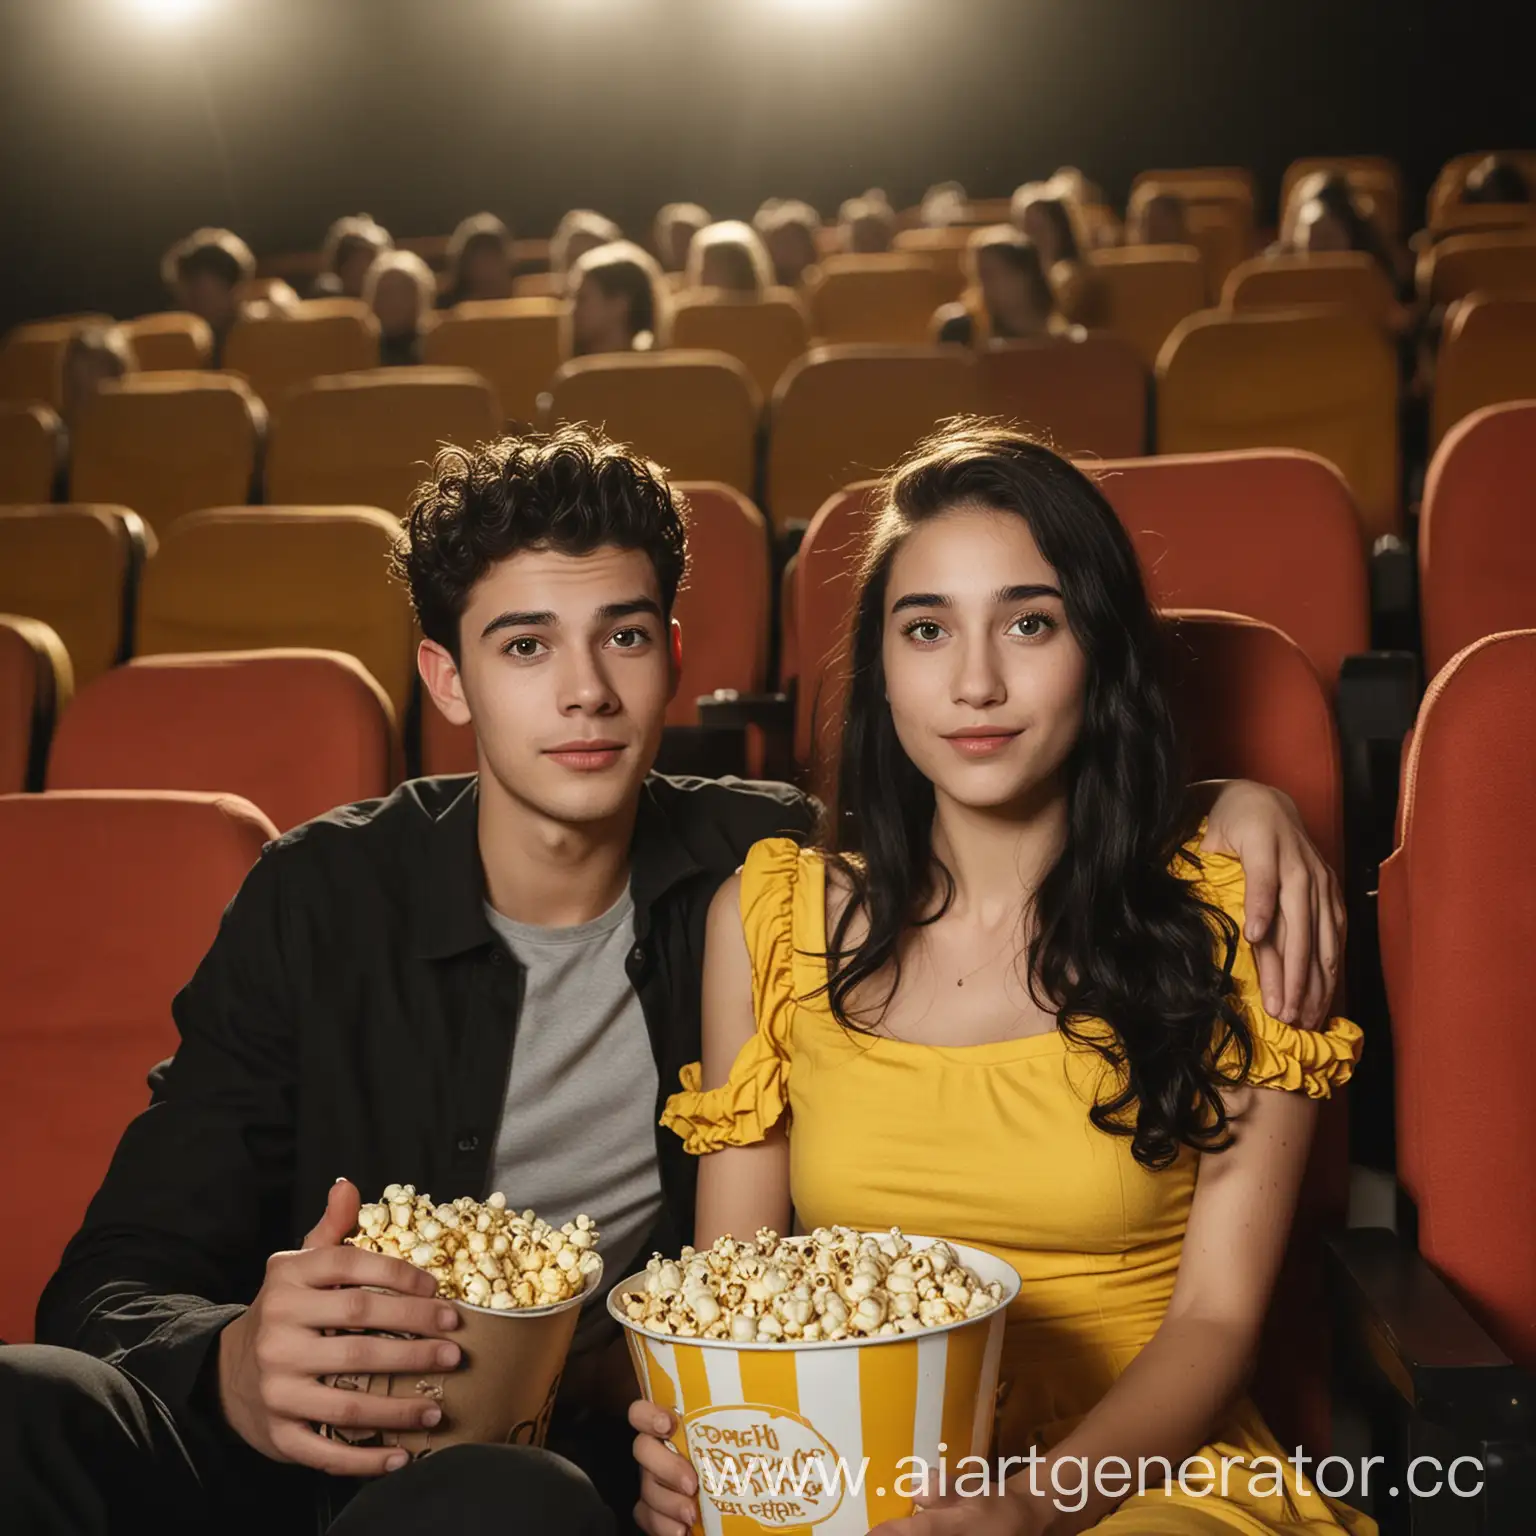 Реальная фотография. Молодой мужчина 25 лет и девушка 23 года сидят в кинотеатре.  С попкорном. На девушке жёлтое платье и жёлтый ободок в волосах. У нее длинные чёрные волосы.